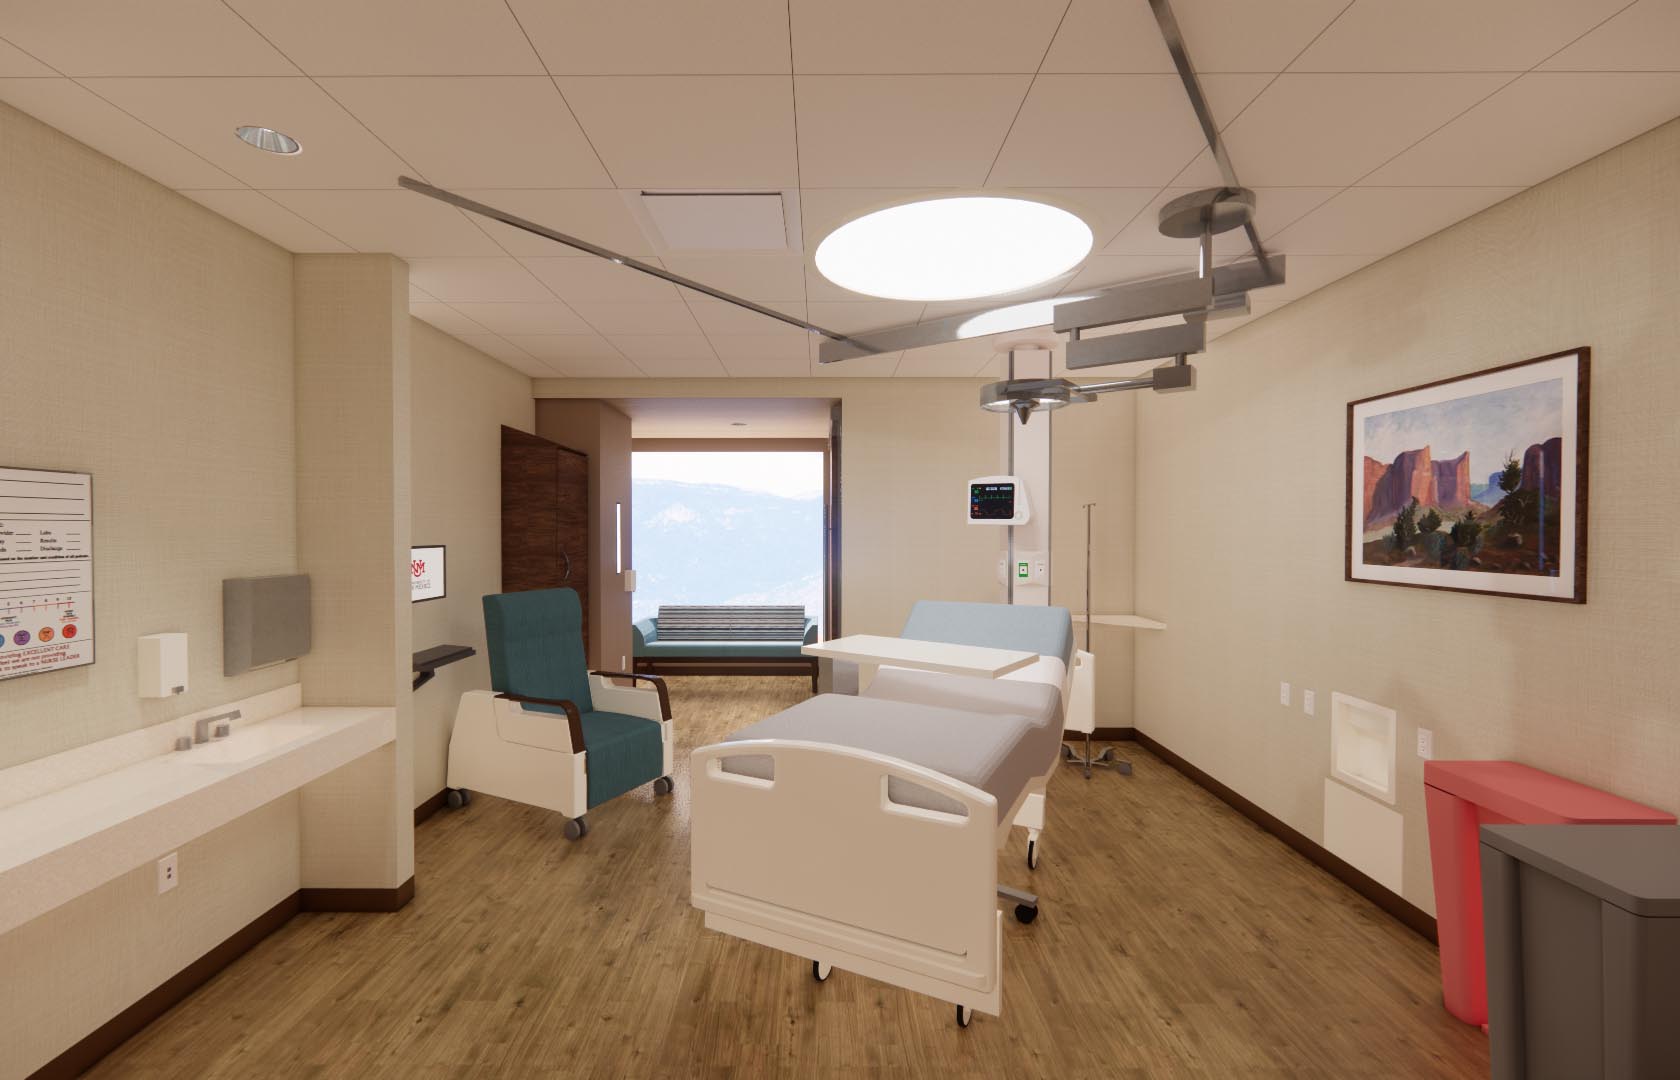 فن مفهوم غرفة المريض في توسعة البرج الجديد